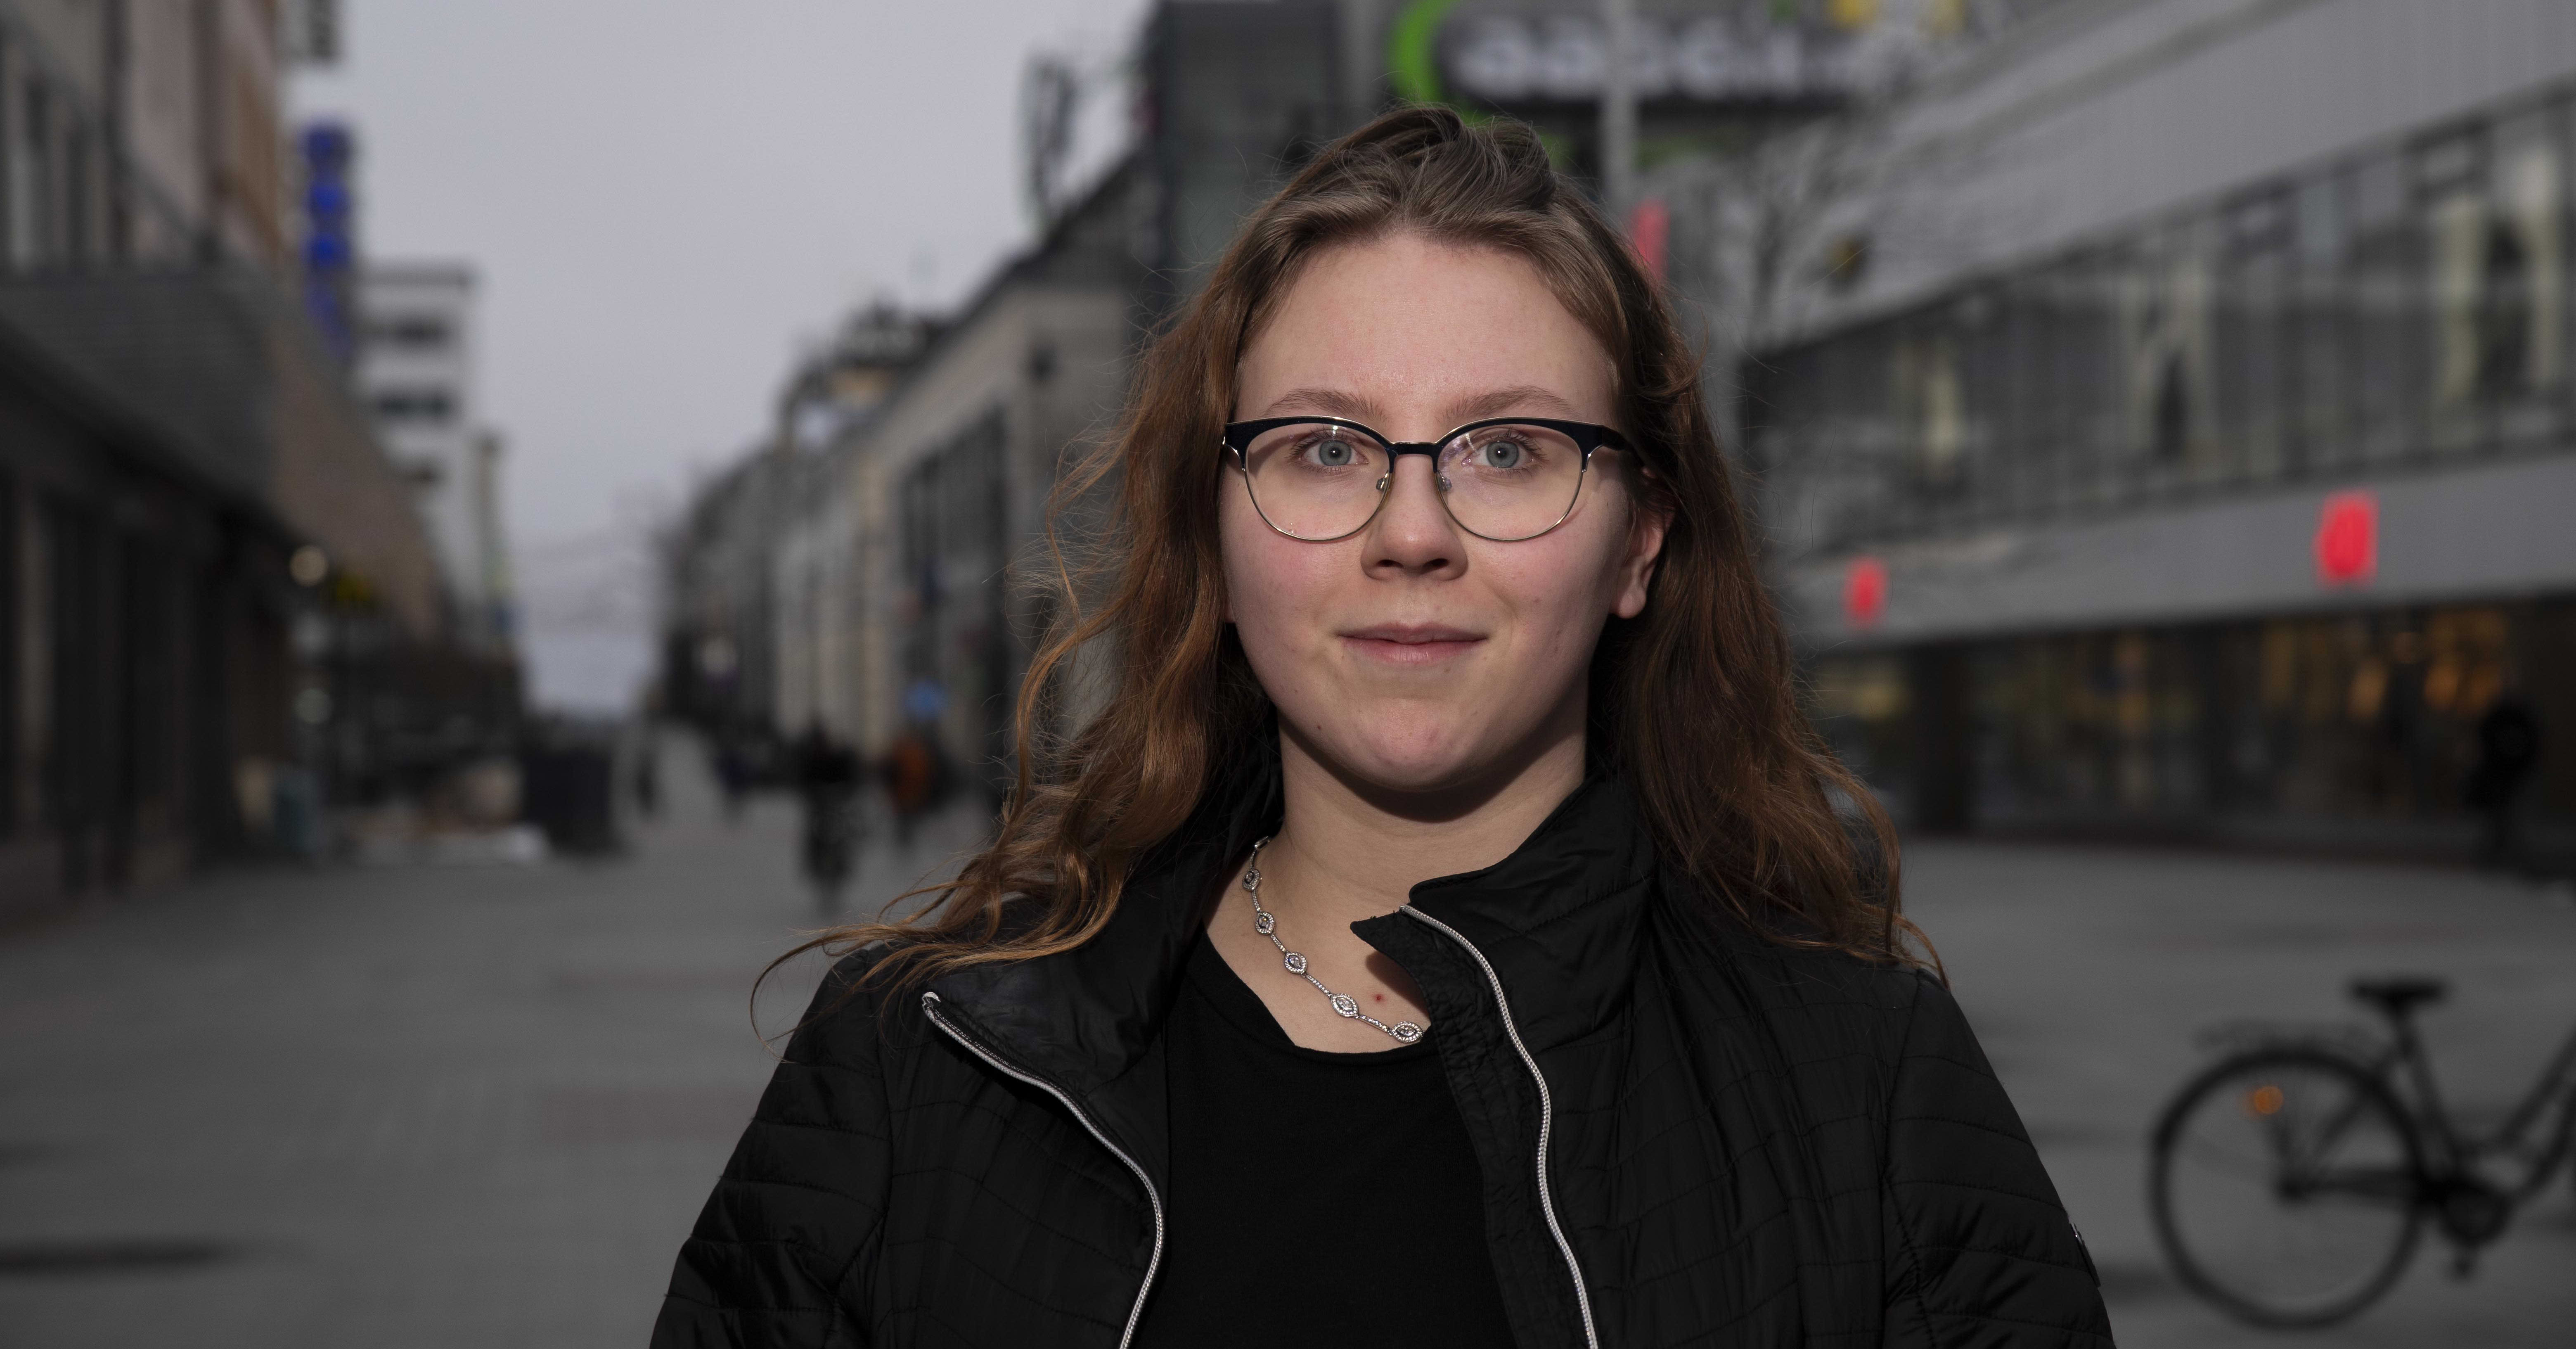 Juulia Savolainen on jonottanut mielenterveyspalveluihin jo puoli vuotta, ja pian odottaa uusi jono – “19-vuotiaat ovat väliinputoajia”